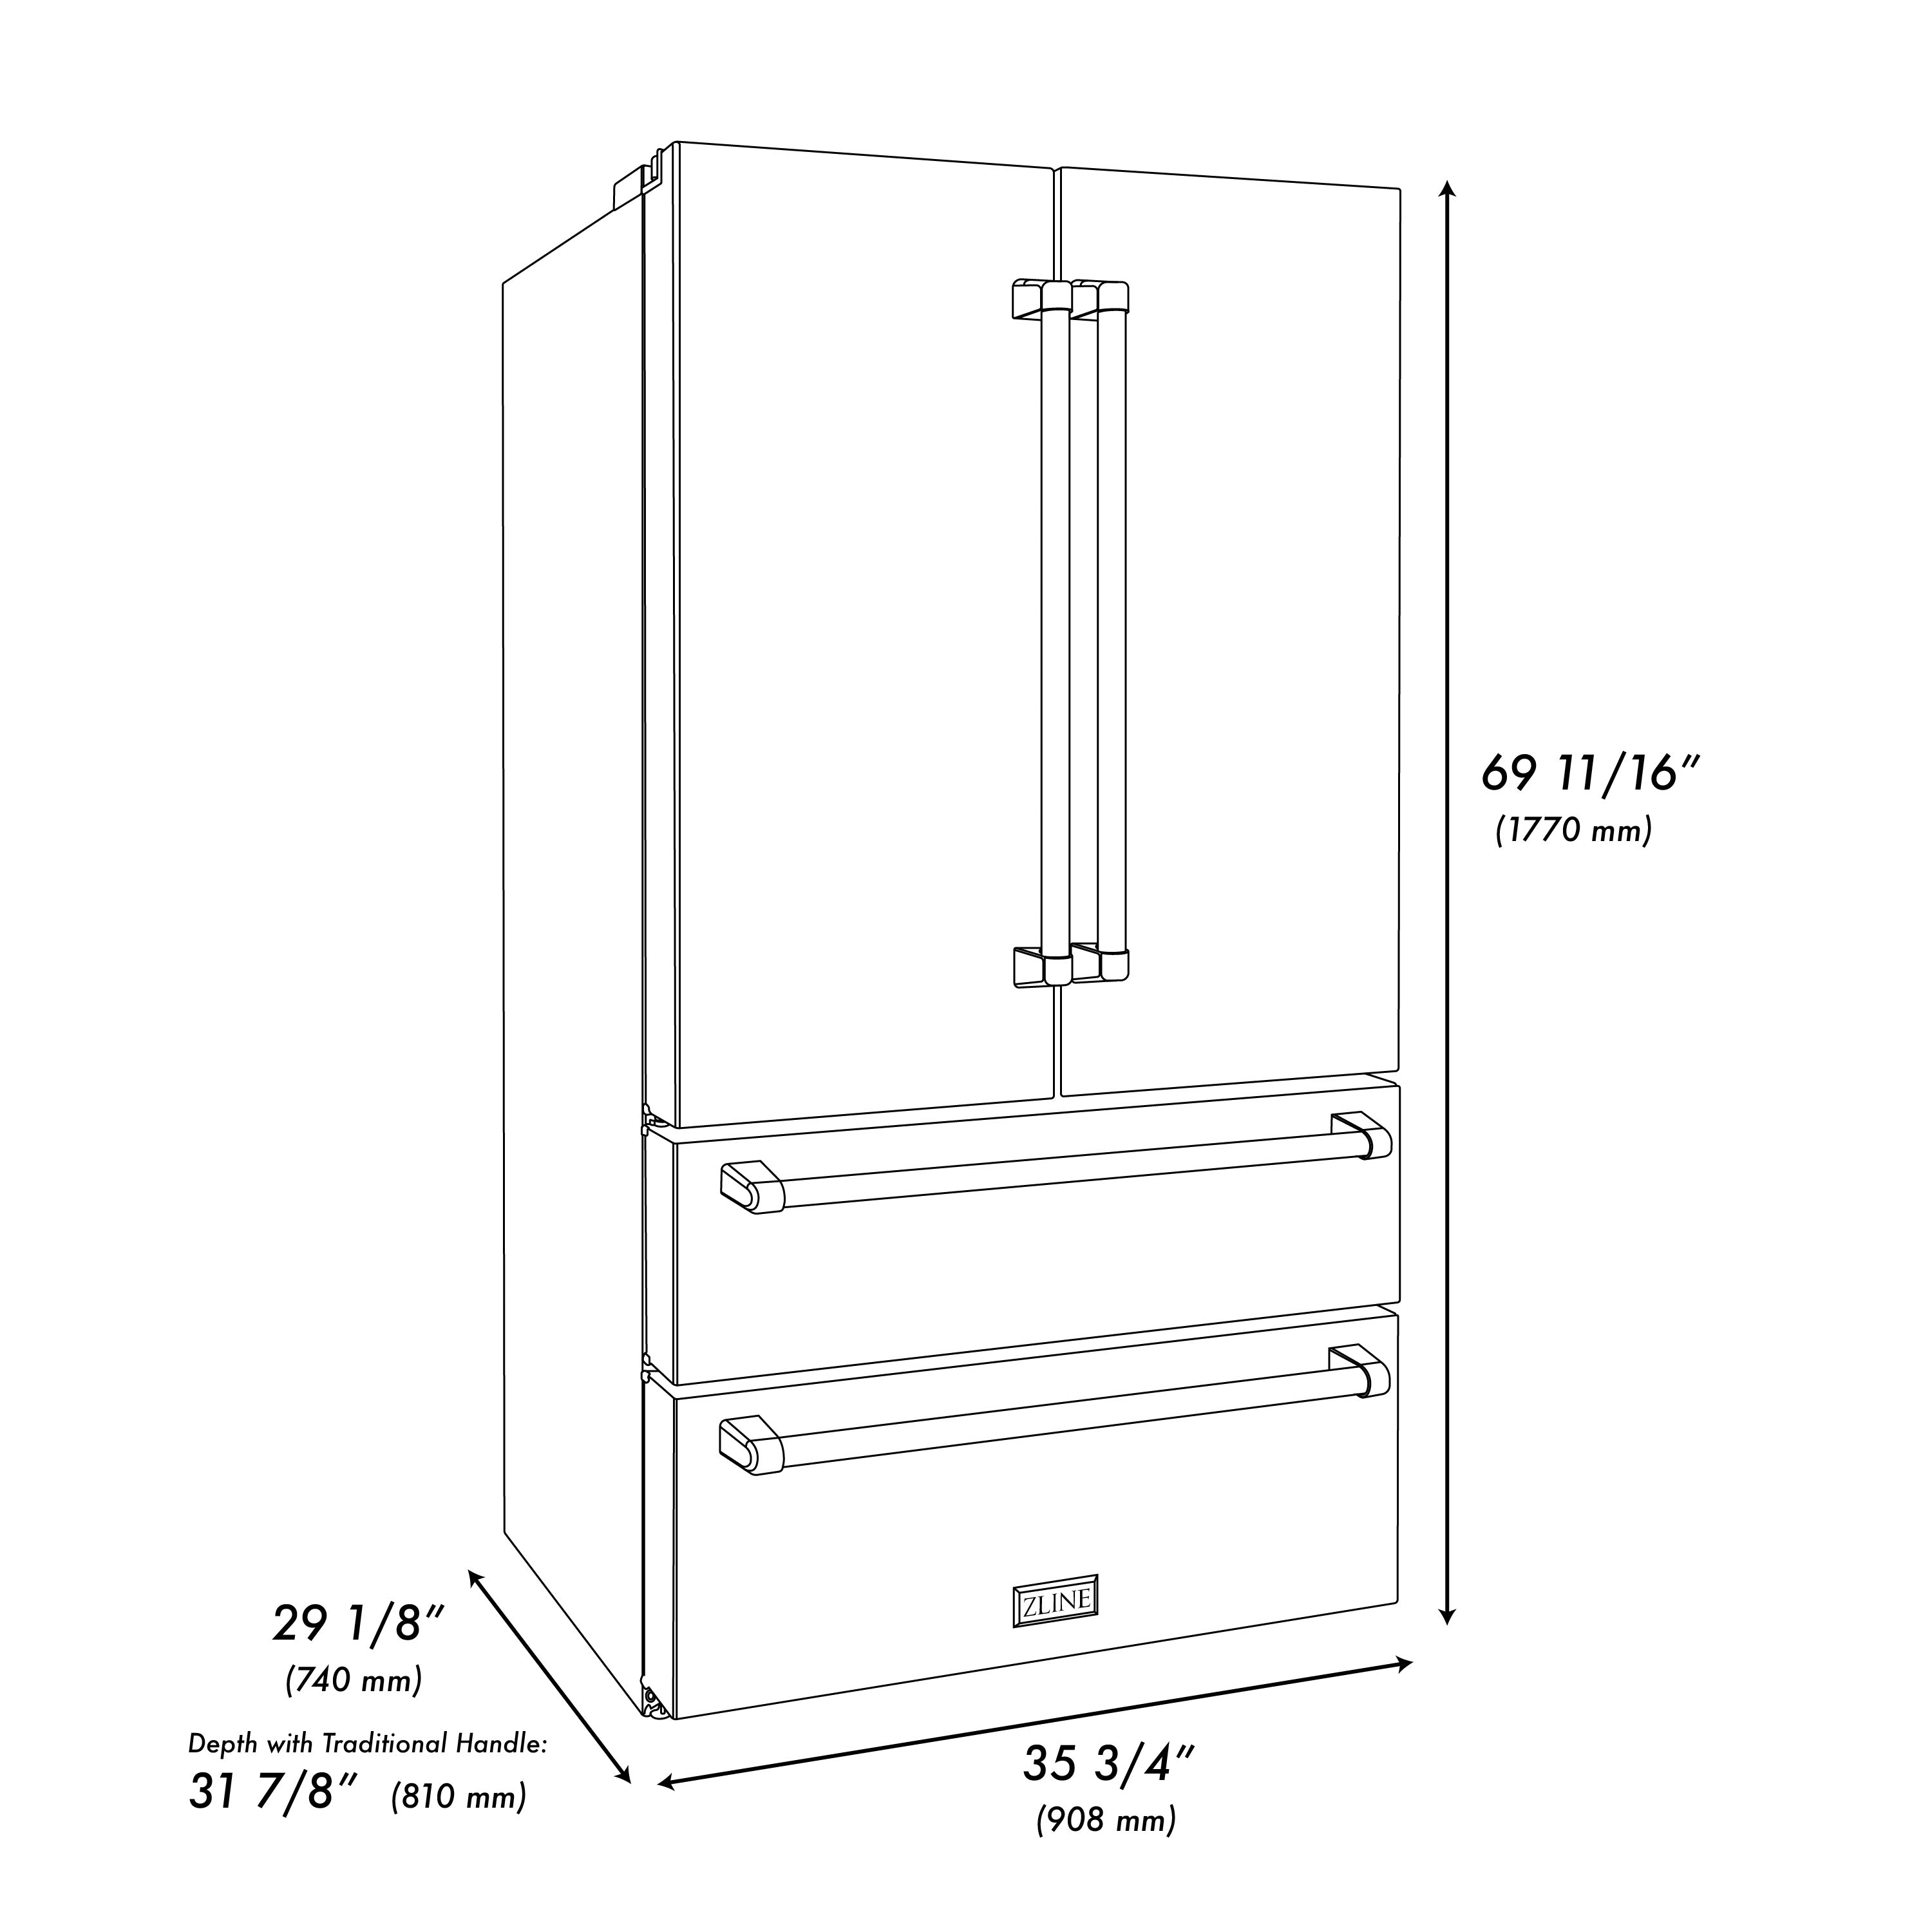 ZLINE 36" 22.5 cu. ft 4-Door French Door Refrigerator with Ice Maker in Fingerprint Resistant Stainless Steel